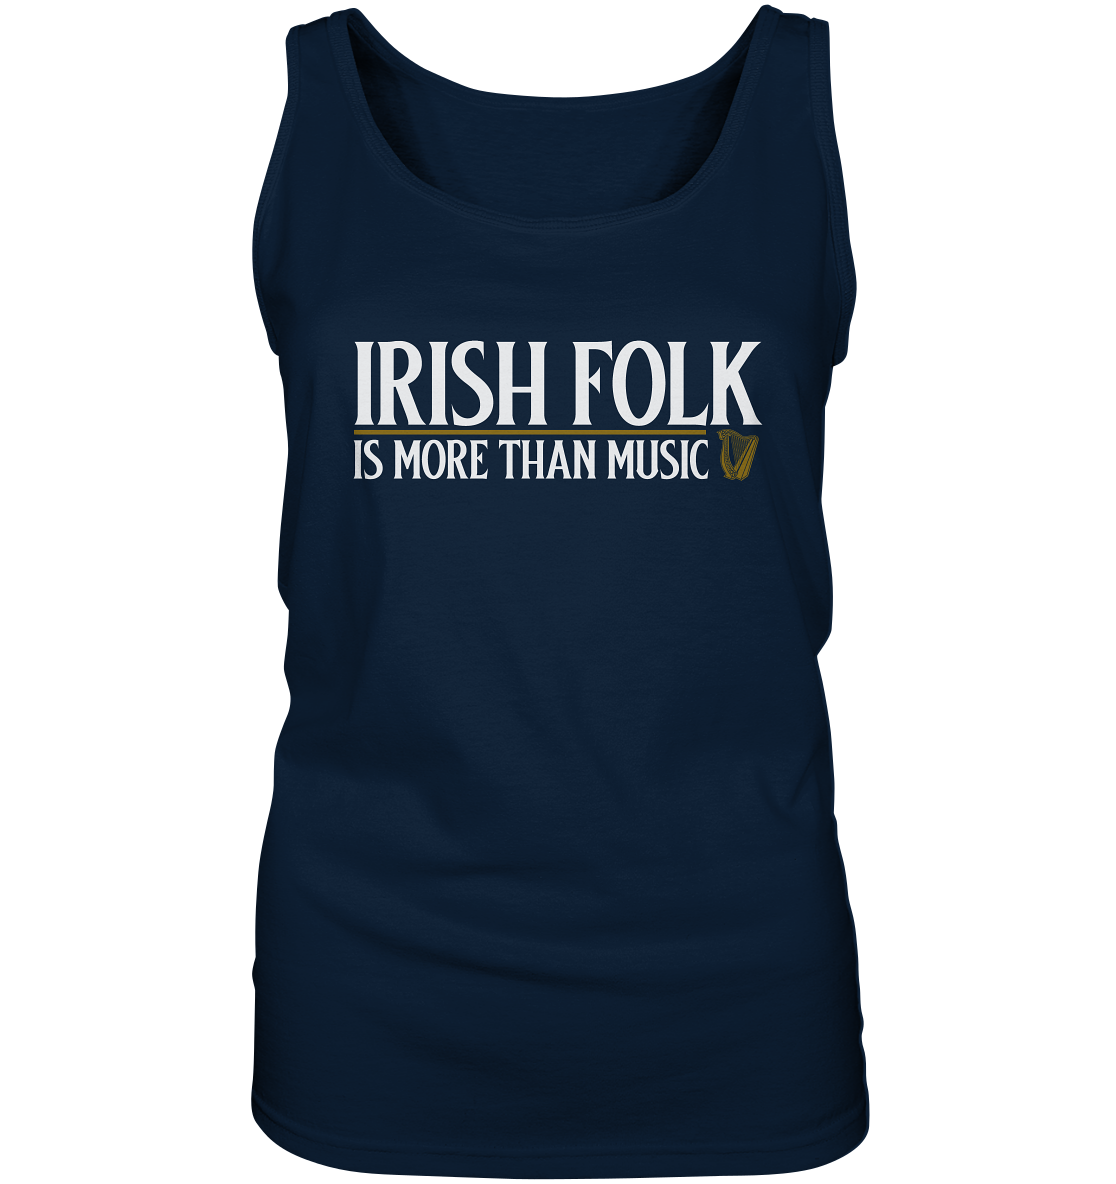 Irish Folk "Is More Than Music" - Ladies Tank-Top